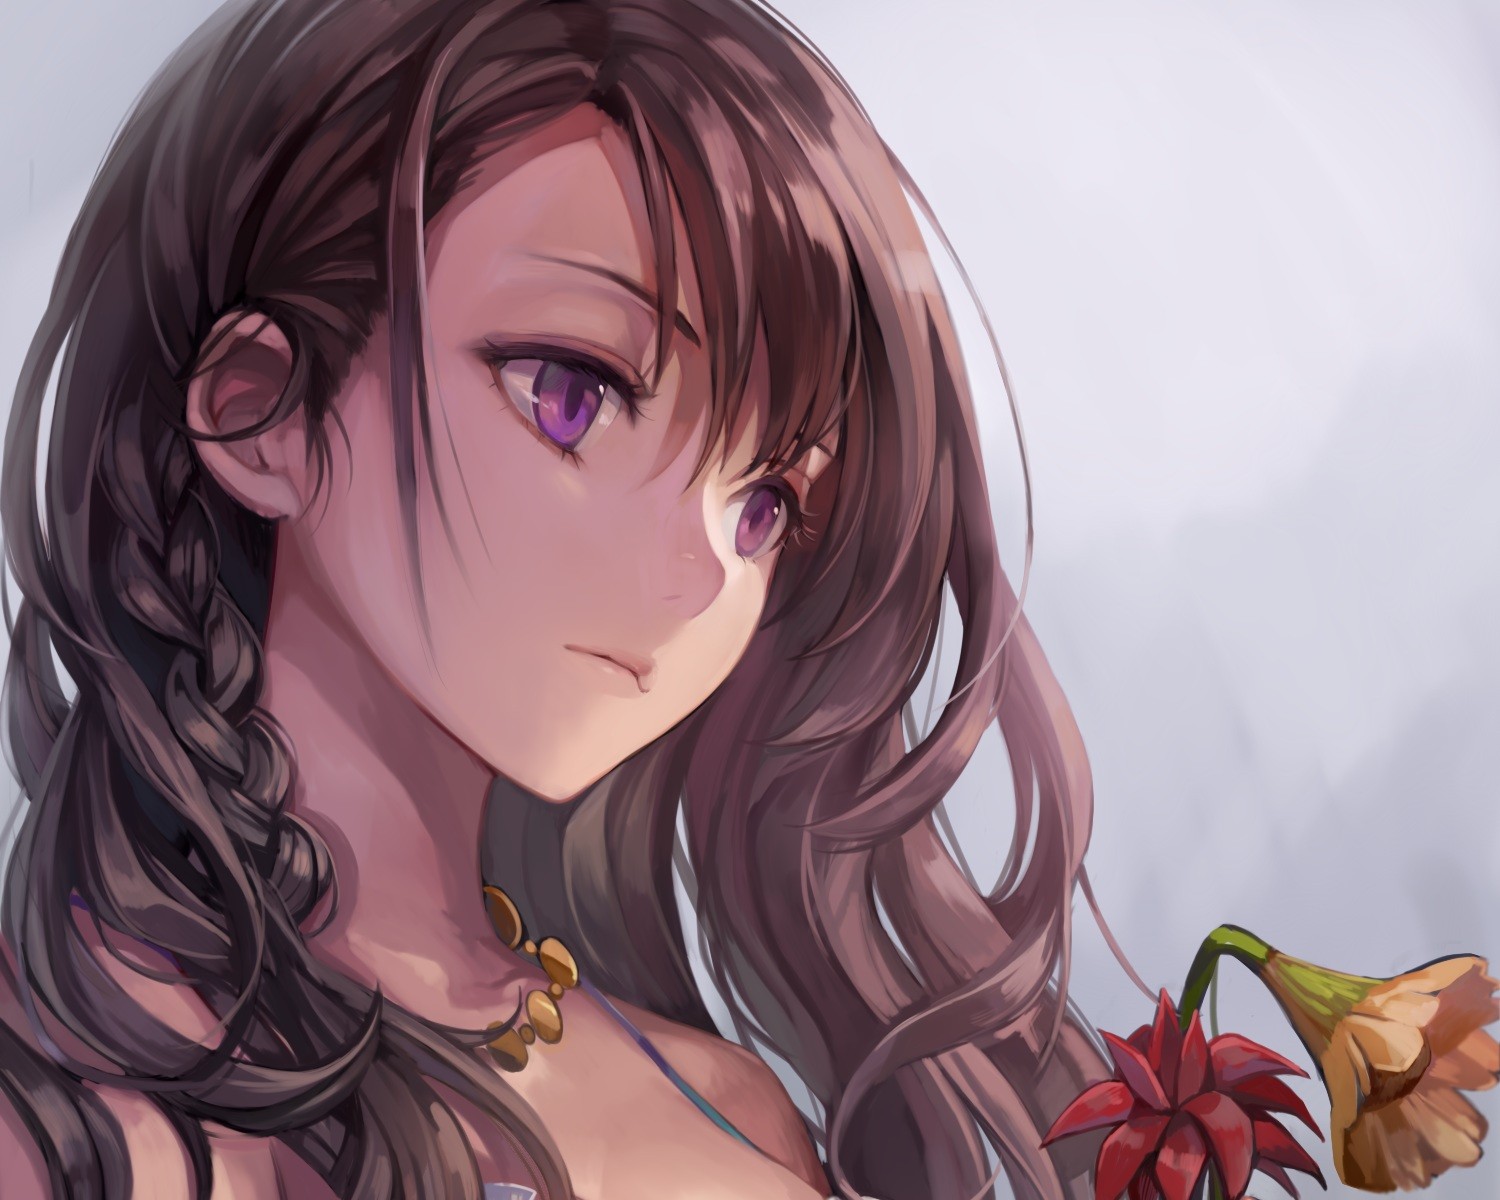 Anime 1500x1200 anime girls purple eyes brunette Momoko anime women face sad flowers plants long hair